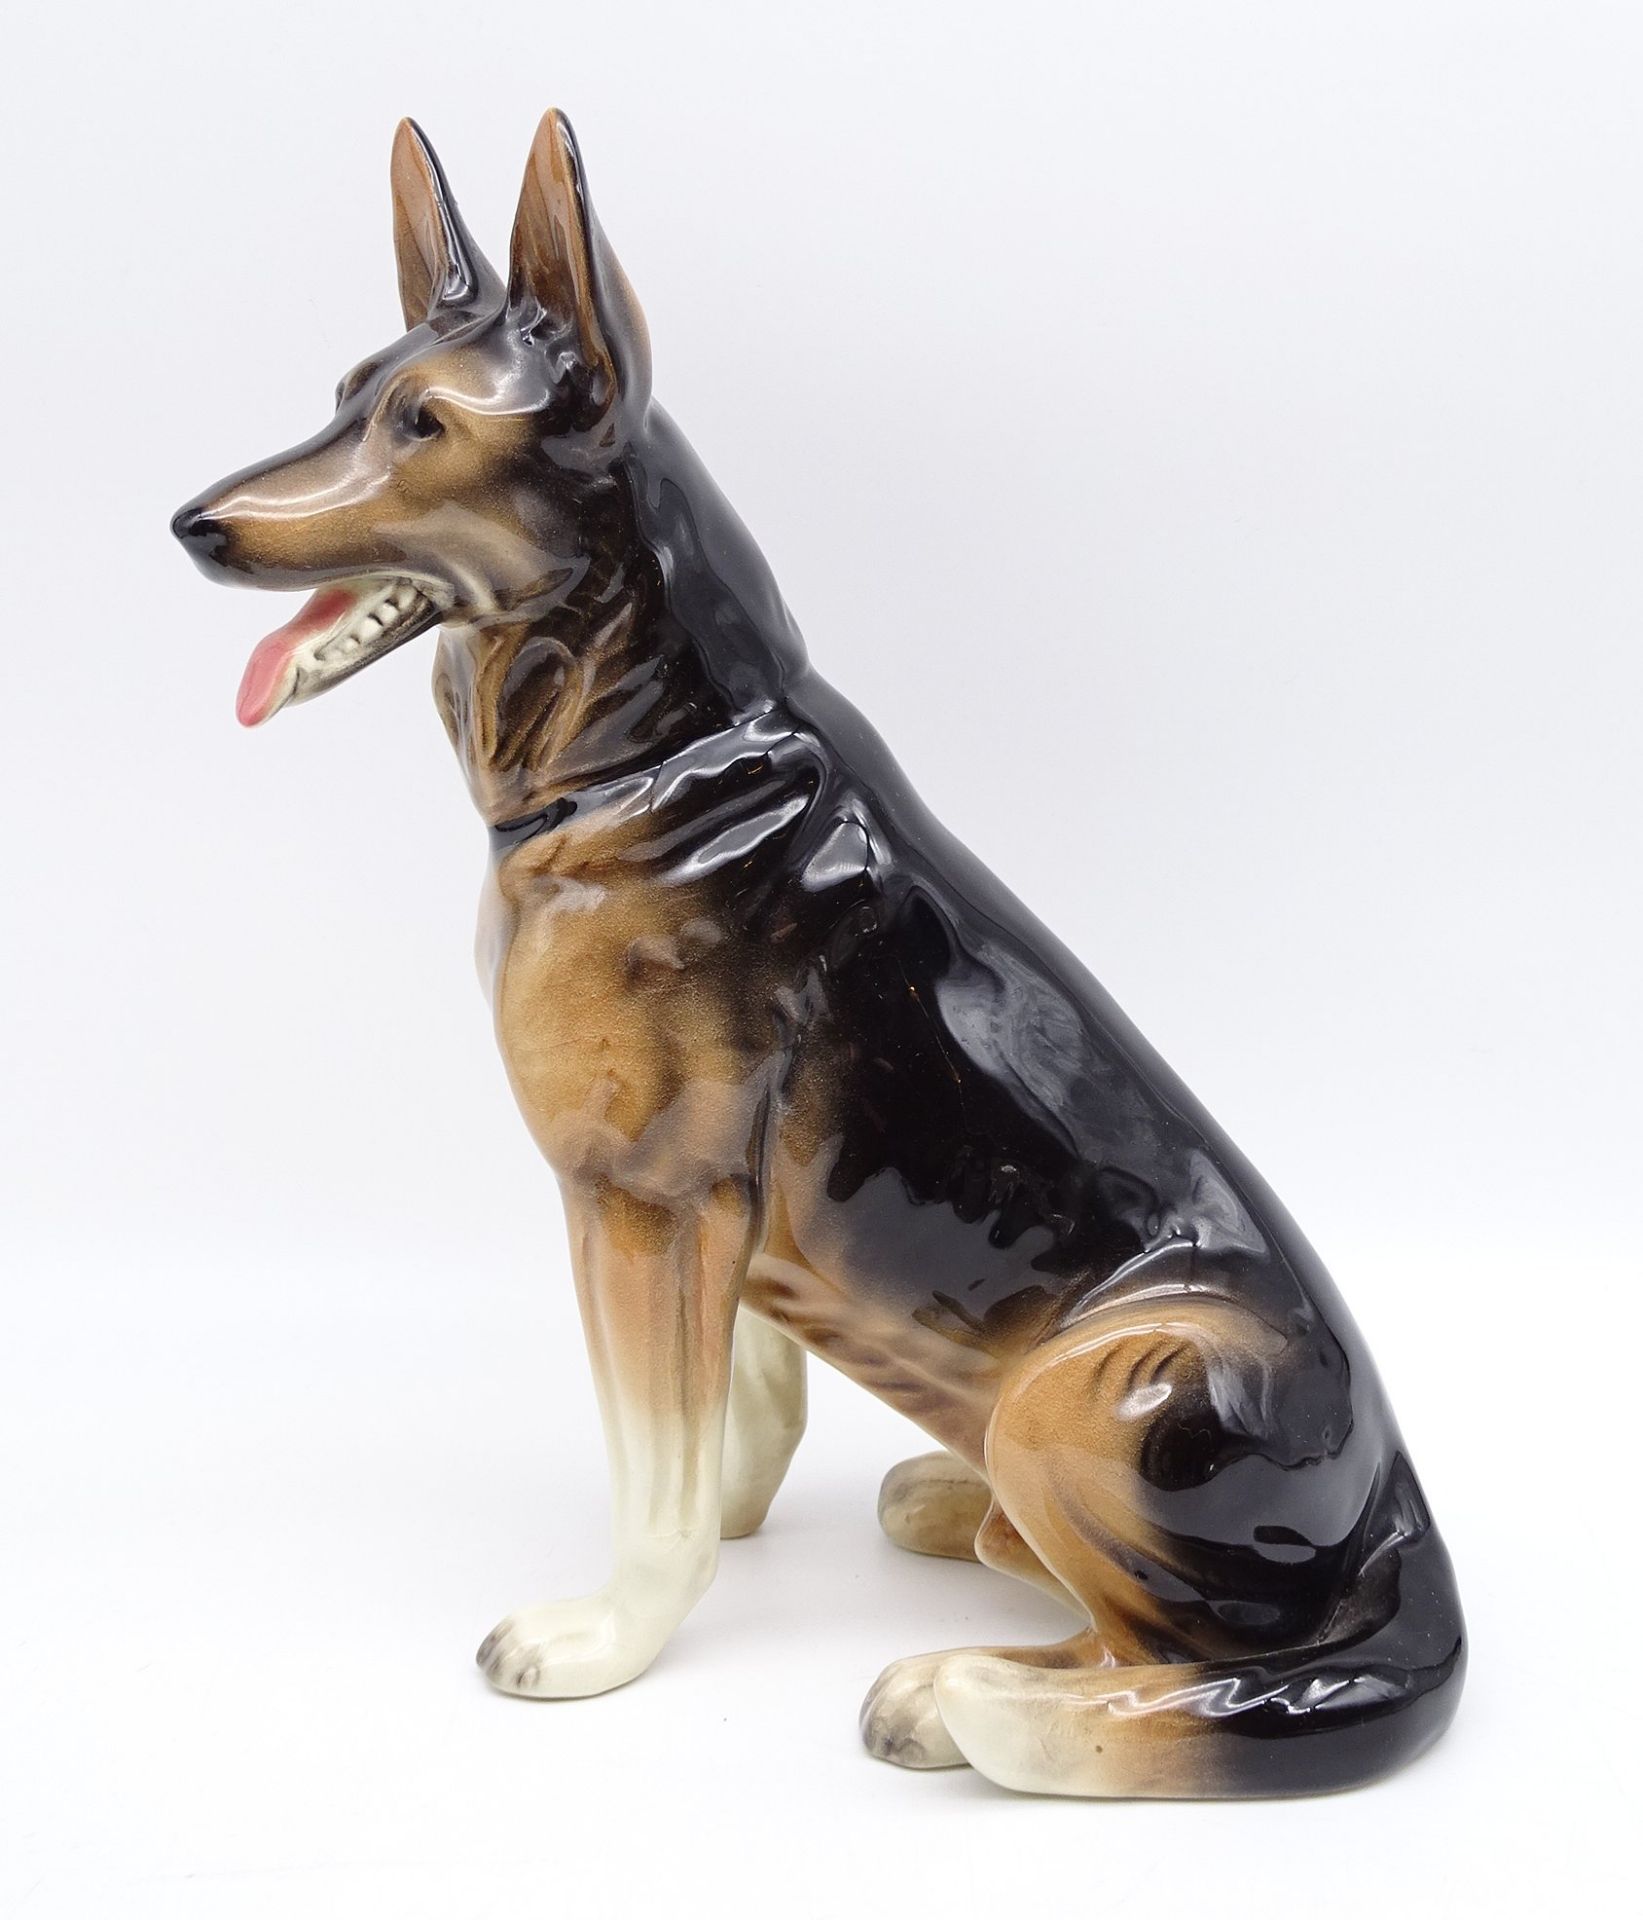 Figur eines Schäferhundes, nummeriert, "Made in Germany", H. 28,5 cm, mit Altersspuren, ein Ohr gek